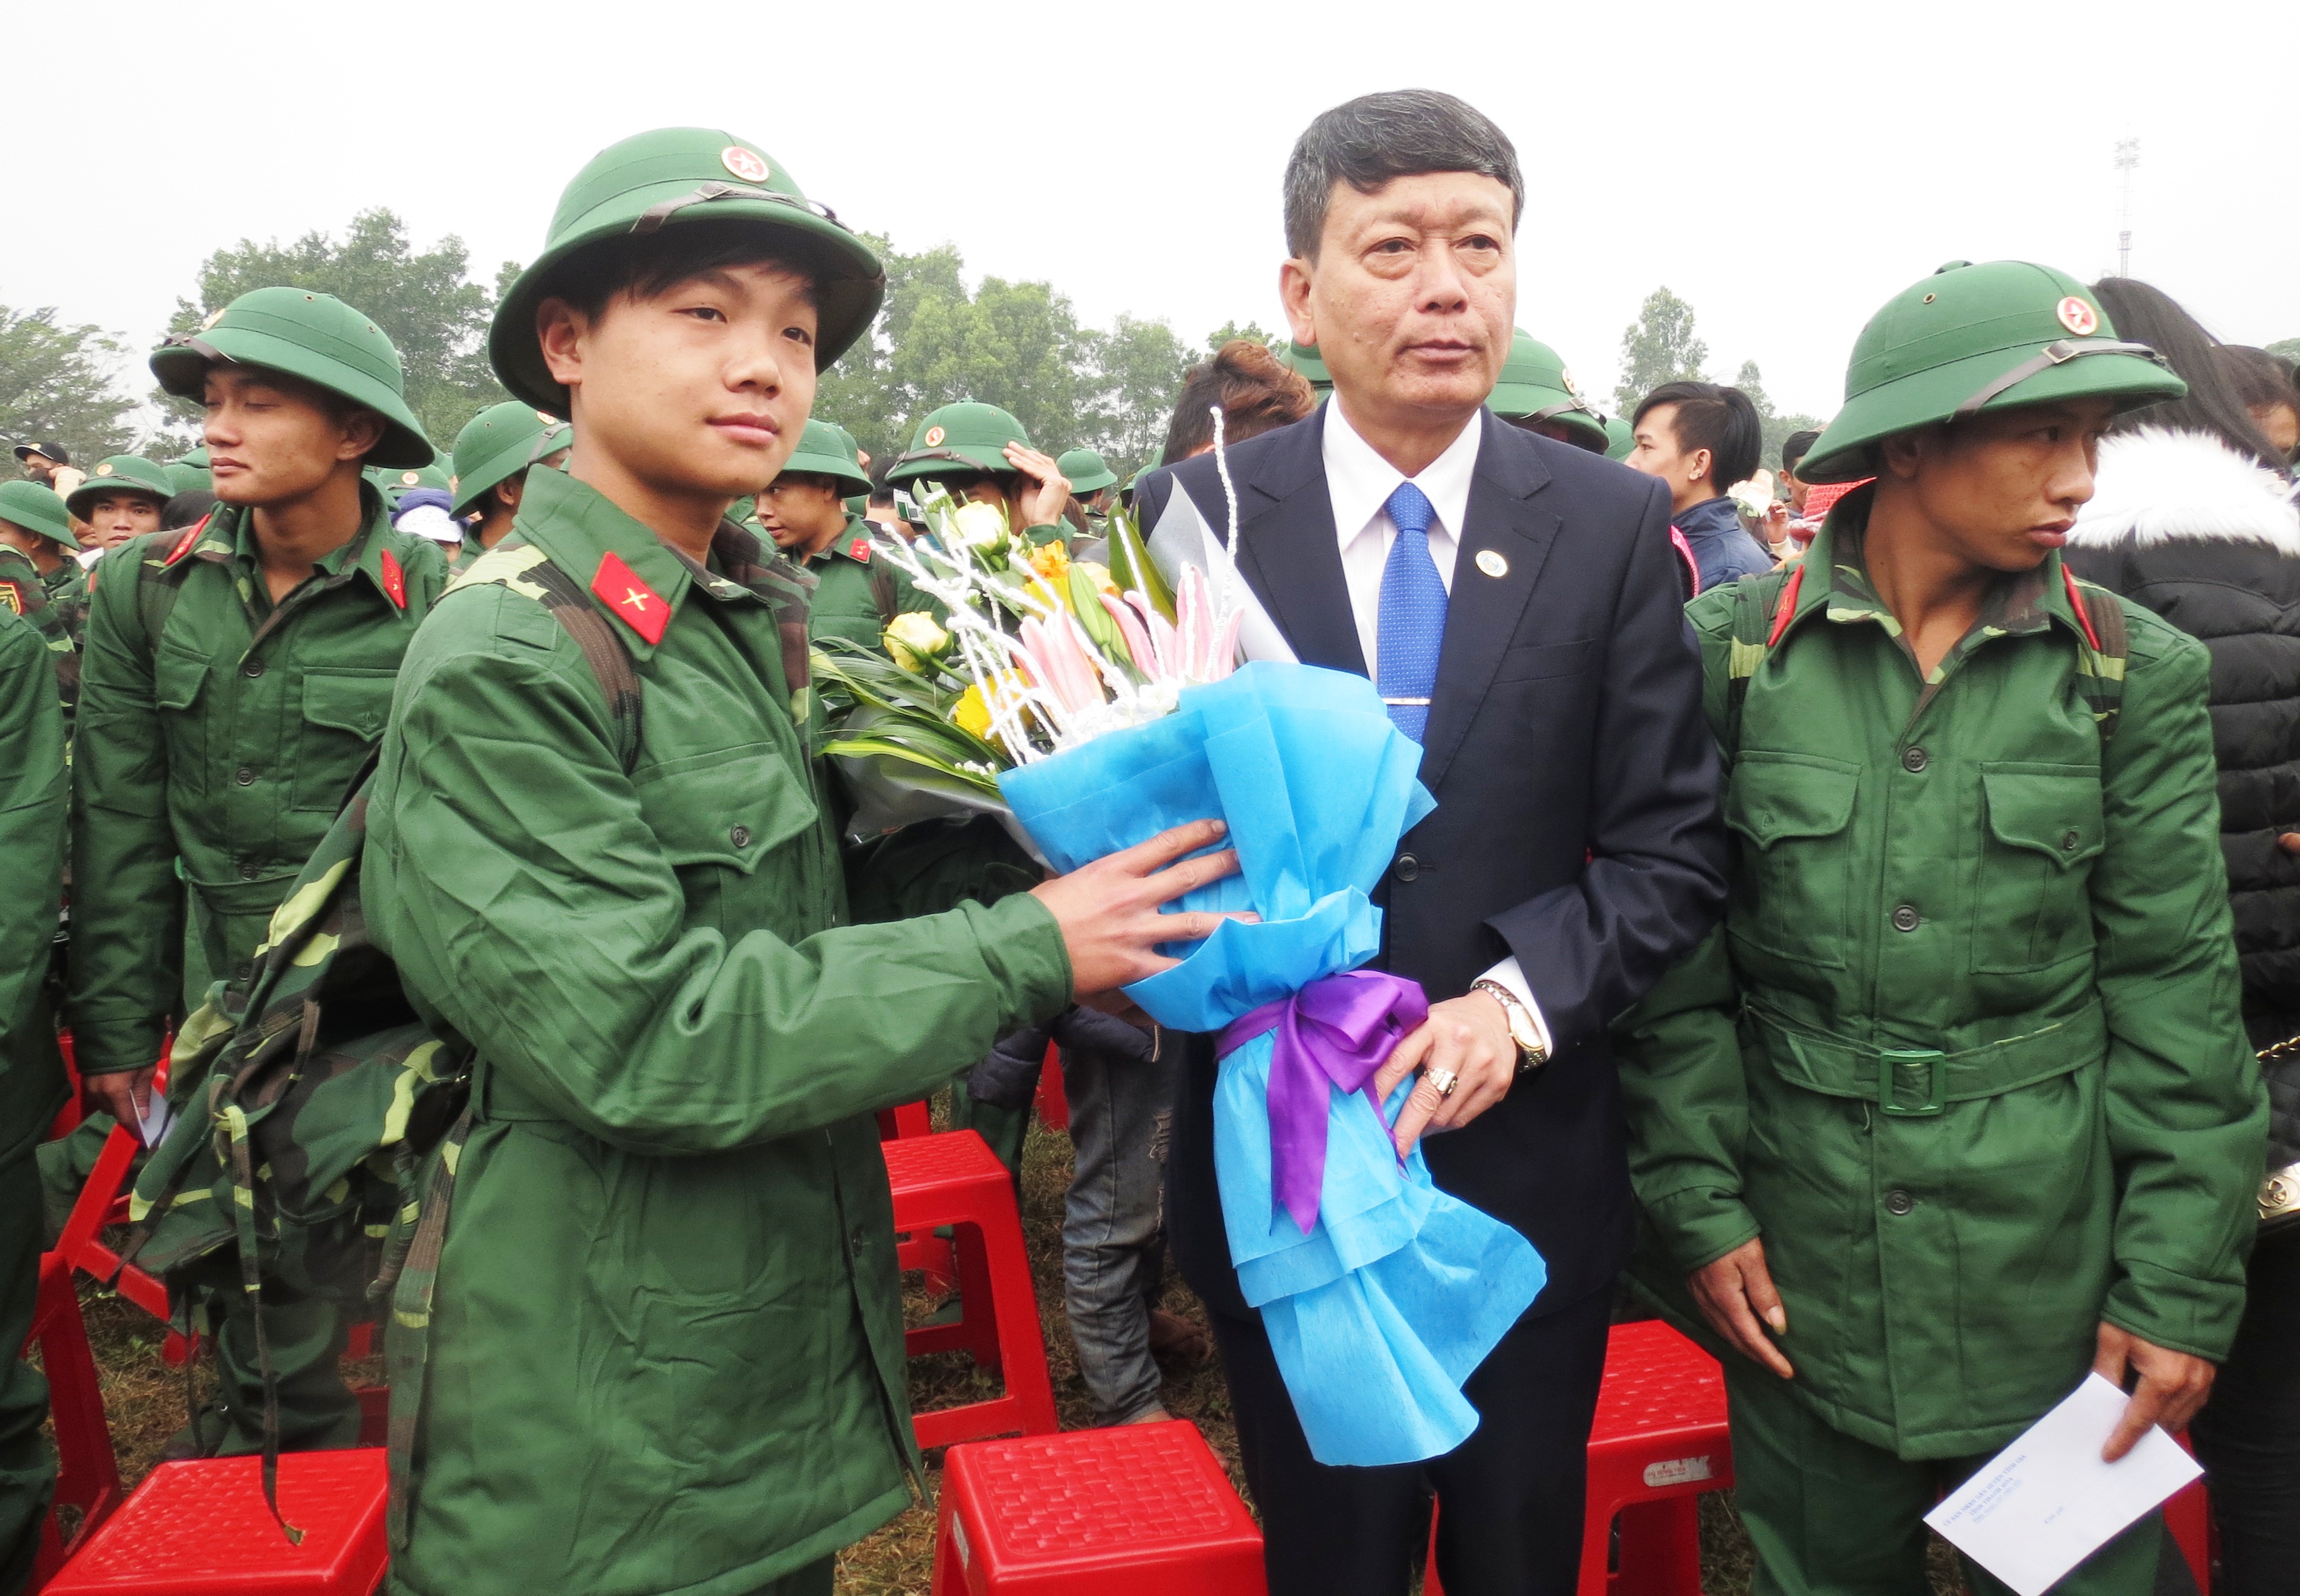 Đồng chí Nguyễn Xuân Thủy, Tỉnh ủy viên, Bí thư Huyện ủy tặng hoa cho các tân binh.